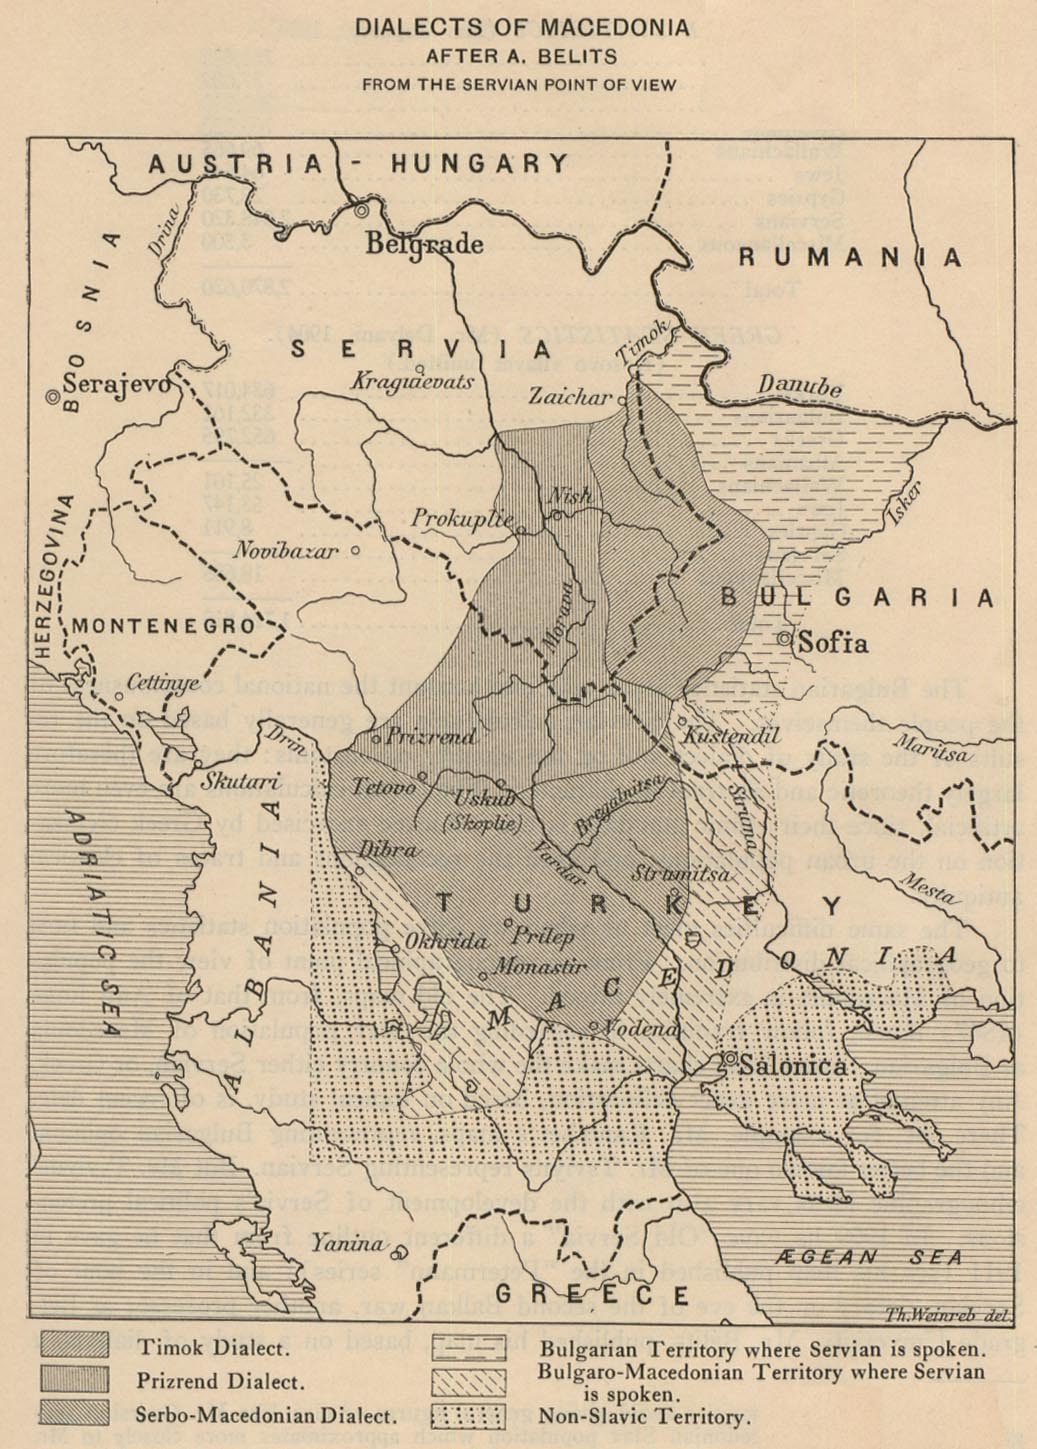 Mapa de los Dialectos de Macedonia 1914